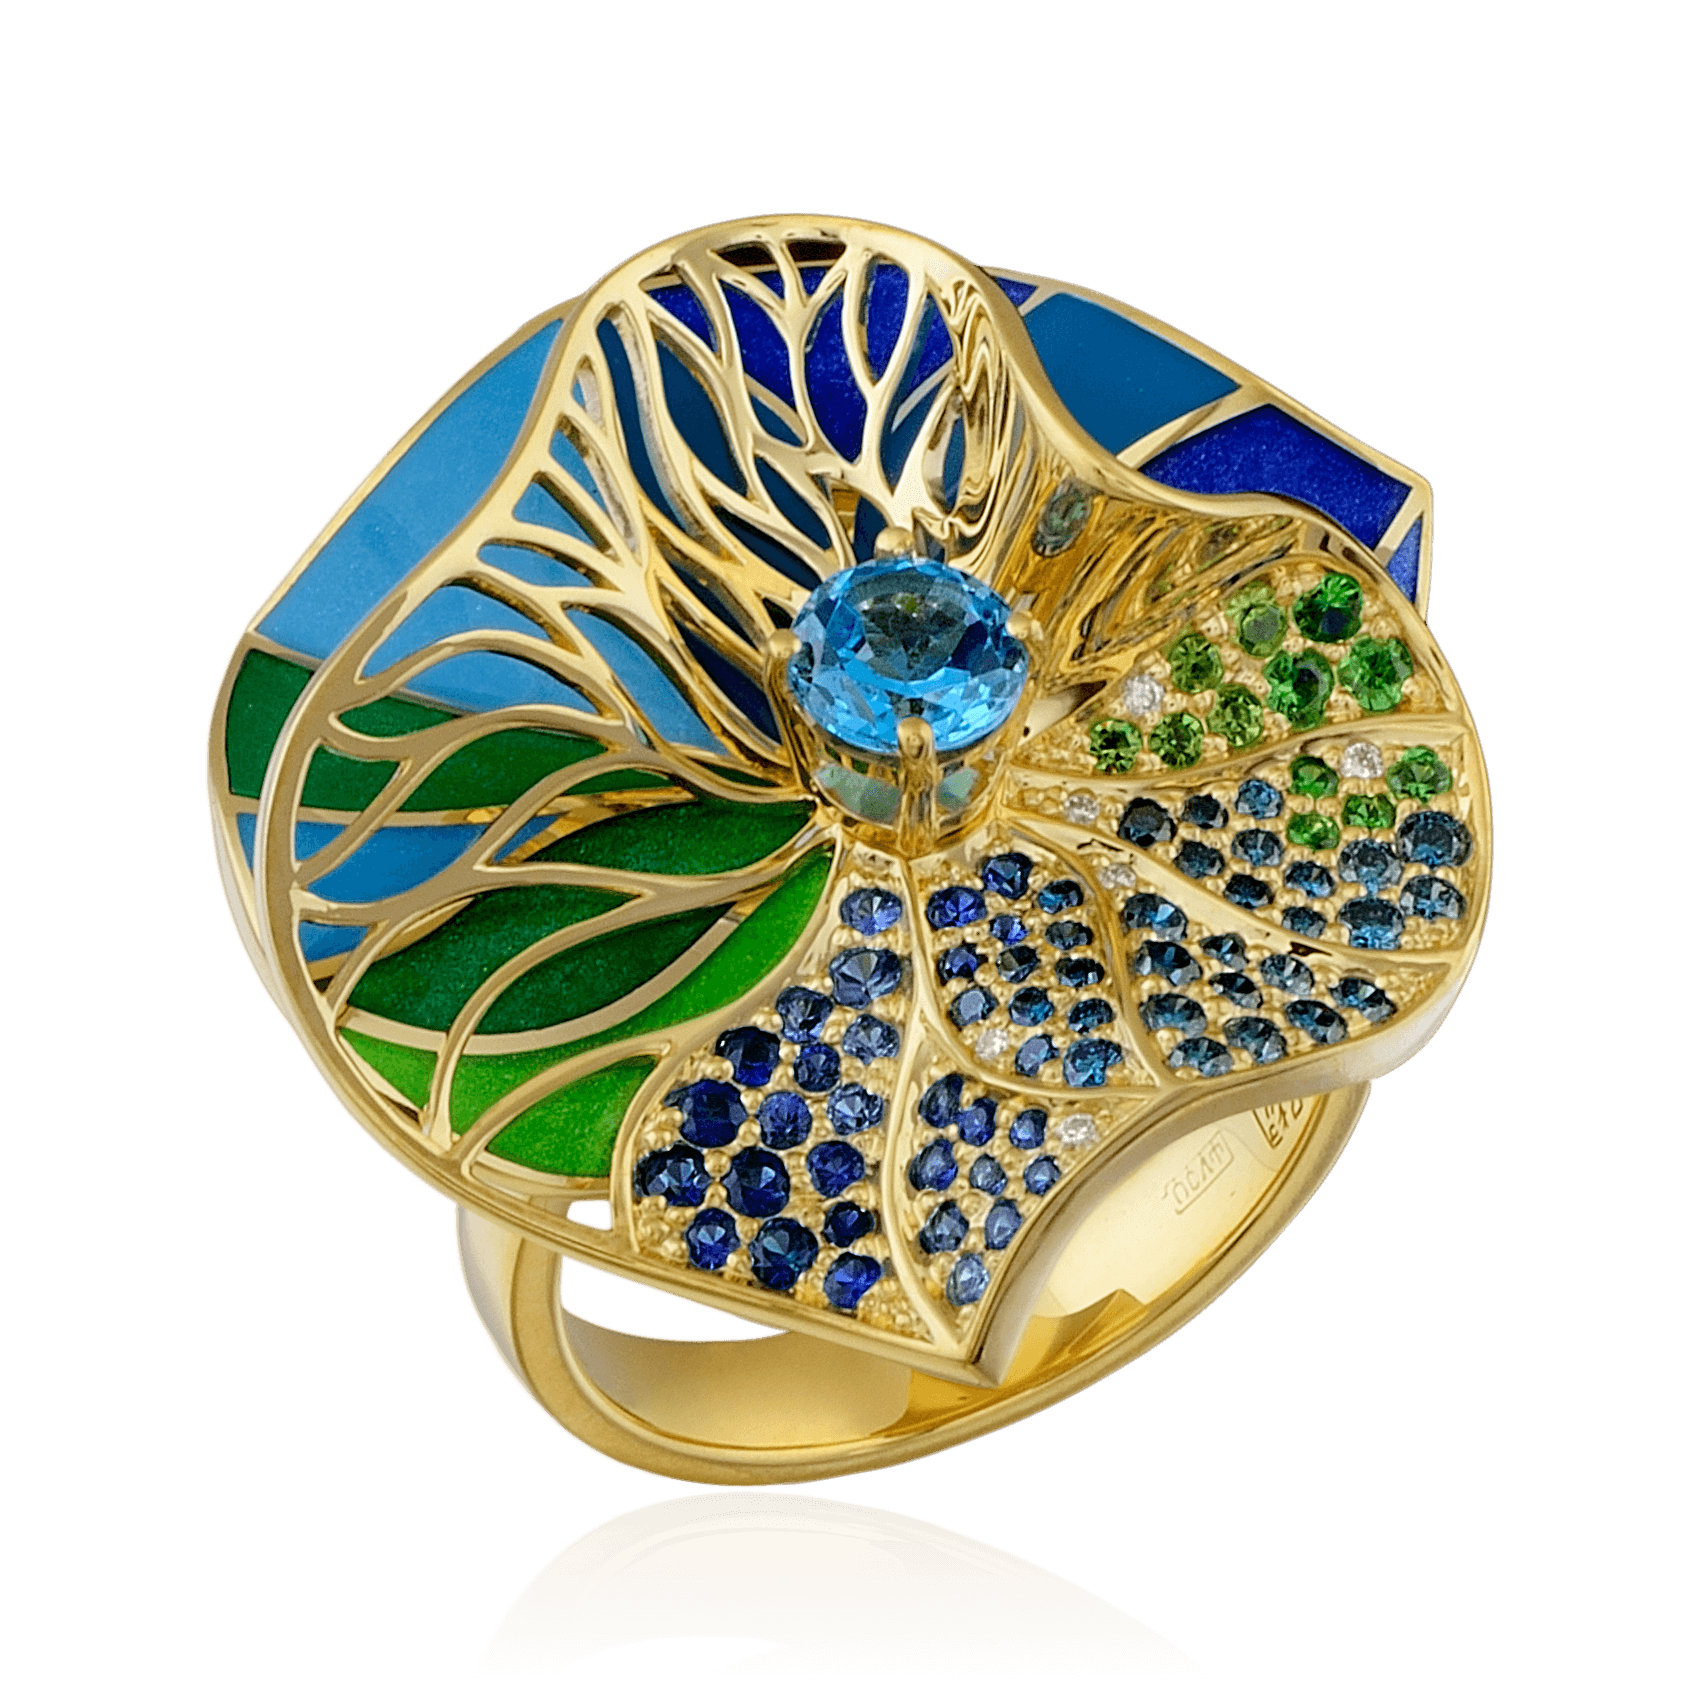 Кольцо в виде цветка с топазом, сапфиром, бриллиантами, эмалью, демантоидом, тсаворитом из желтого золота 750 пробы, фото № 1